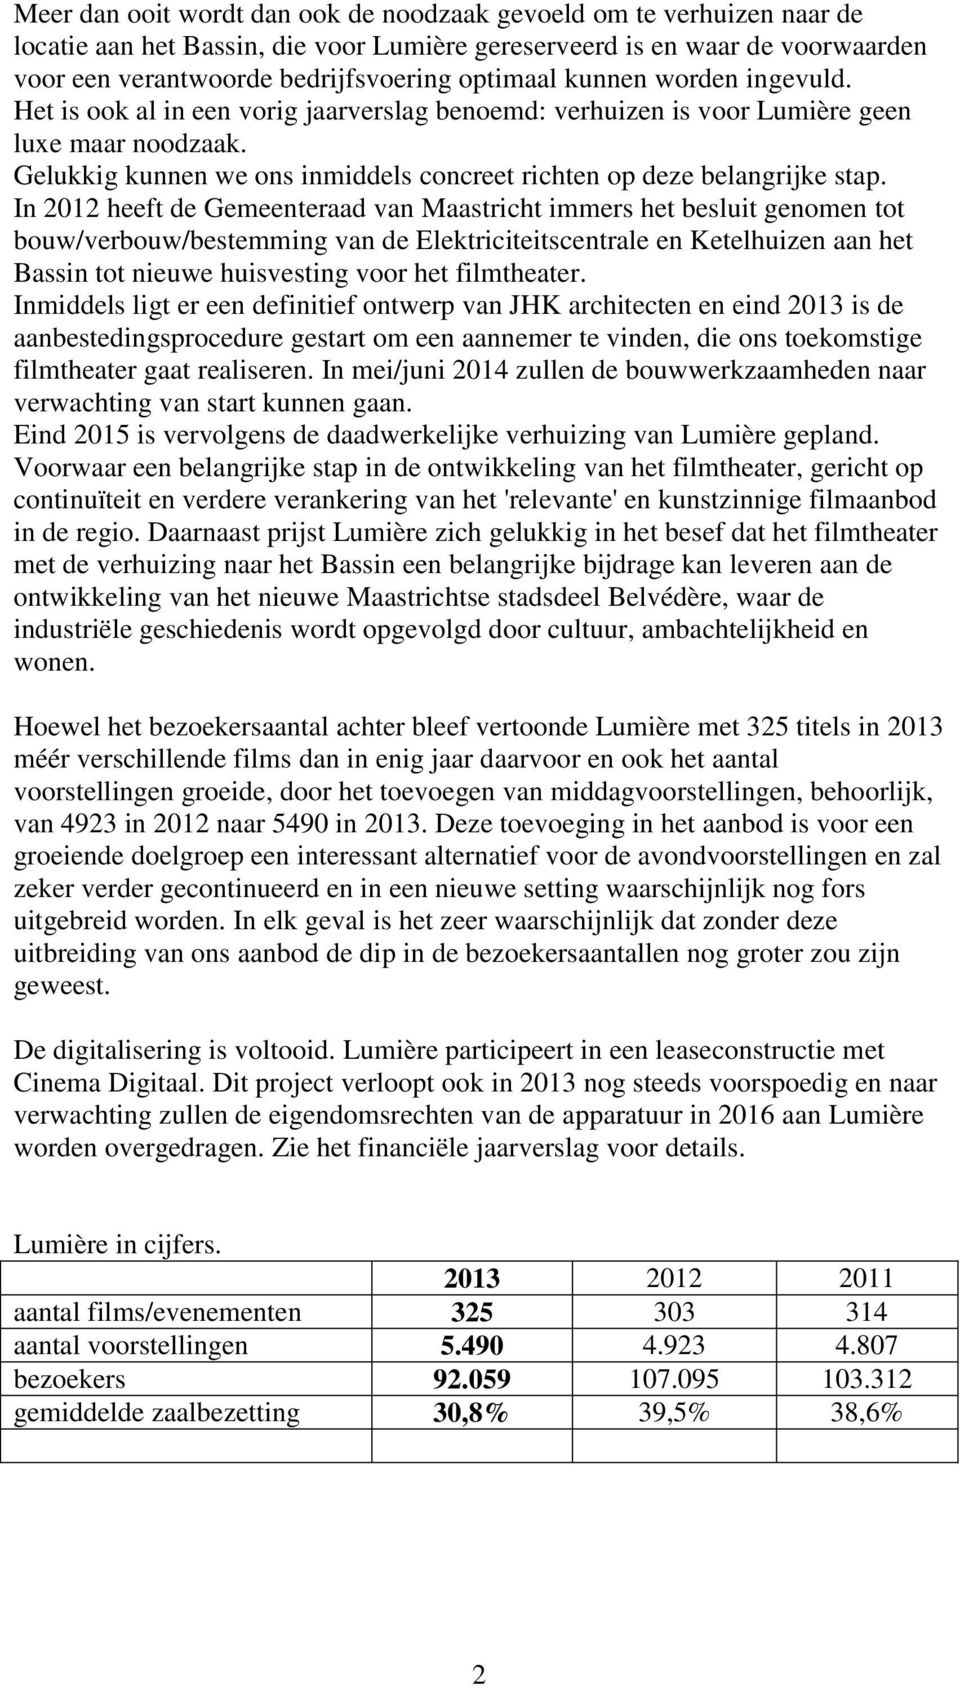 In 2012 heeft de Gemeenteraad van Maastricht immers het besluit genomen tot bouw/verbouw/bestemming van de Elektriciteitscentrale en Ketelhuizen aan het Bassin tot nieuwe huisvesting voor het